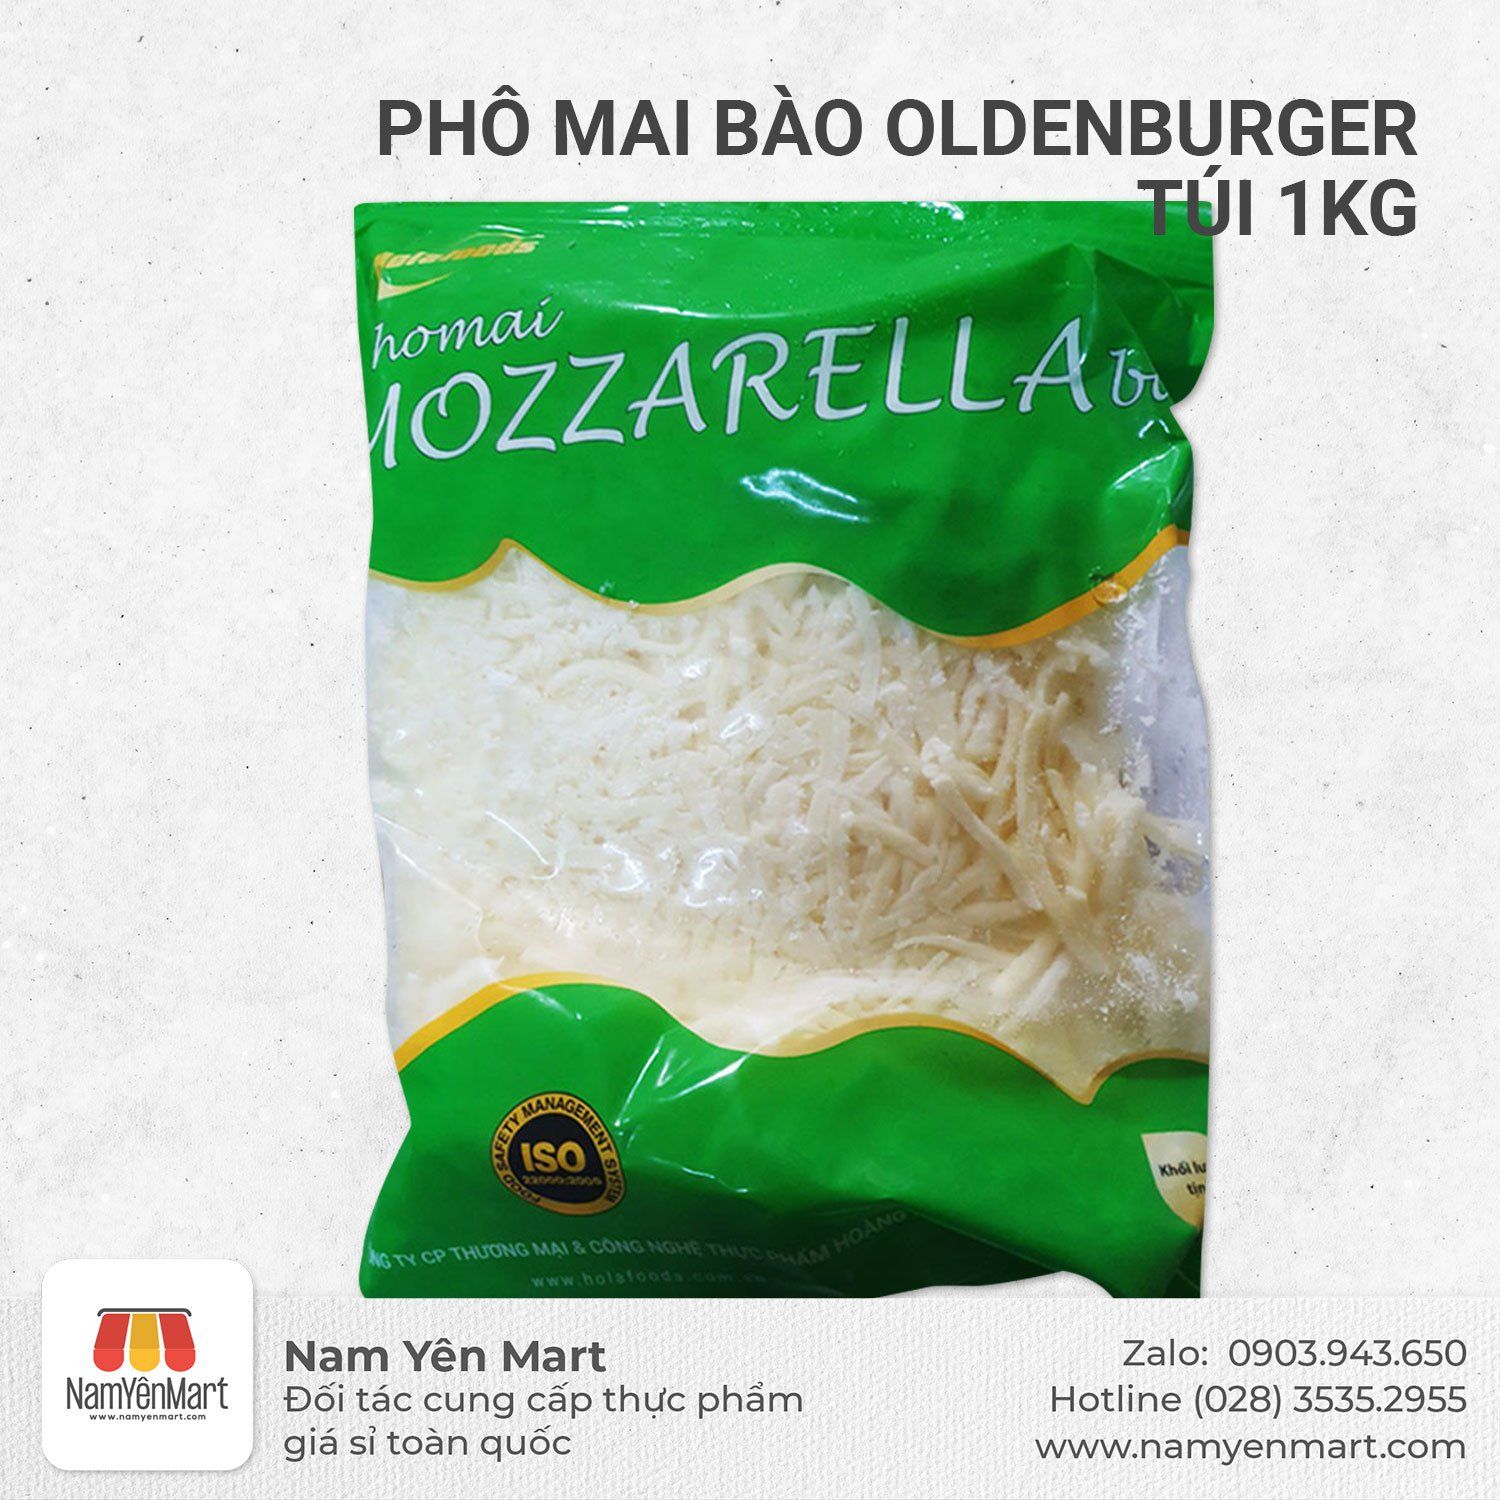  Phô mai Mozzarella bào Oldenburger 1kg - Nam Yên Mart 